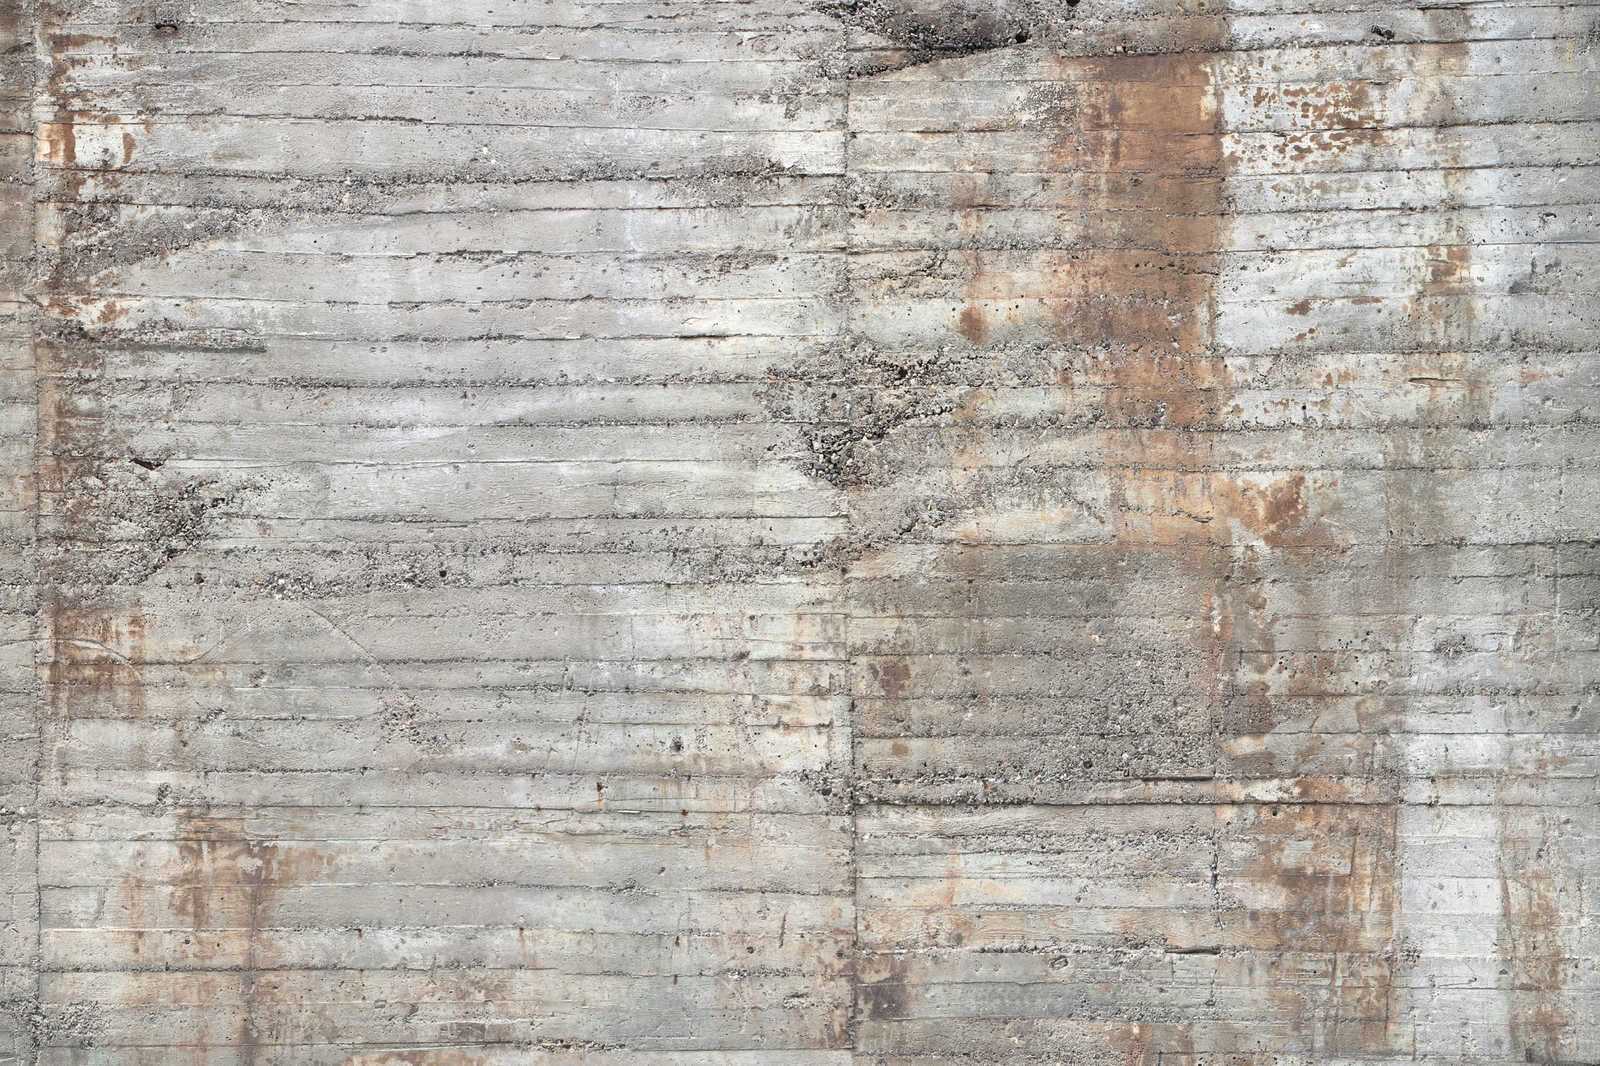             Béton toile rustique béton armé gris marron - 0,90 m x 0,60 m
        